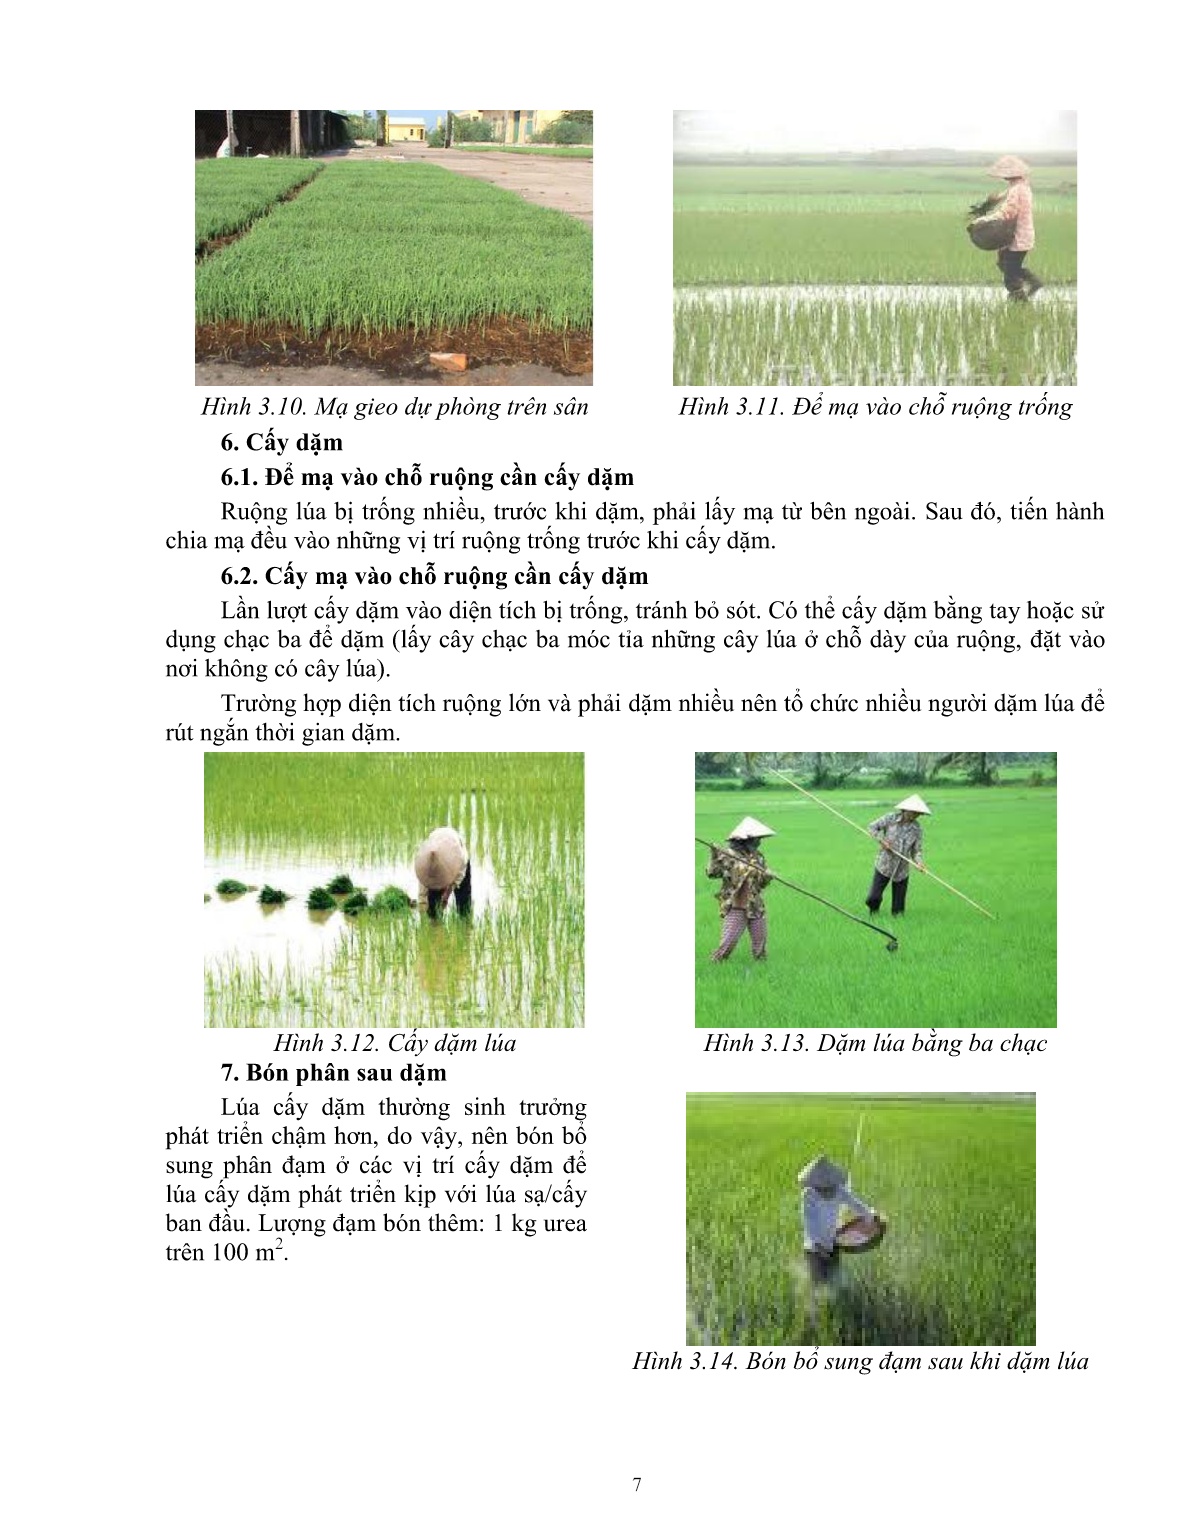 Giáo trình mô đun Chăm sóc lúa (Trình độ: Đào tạo dưới 03 tháng) trang 8